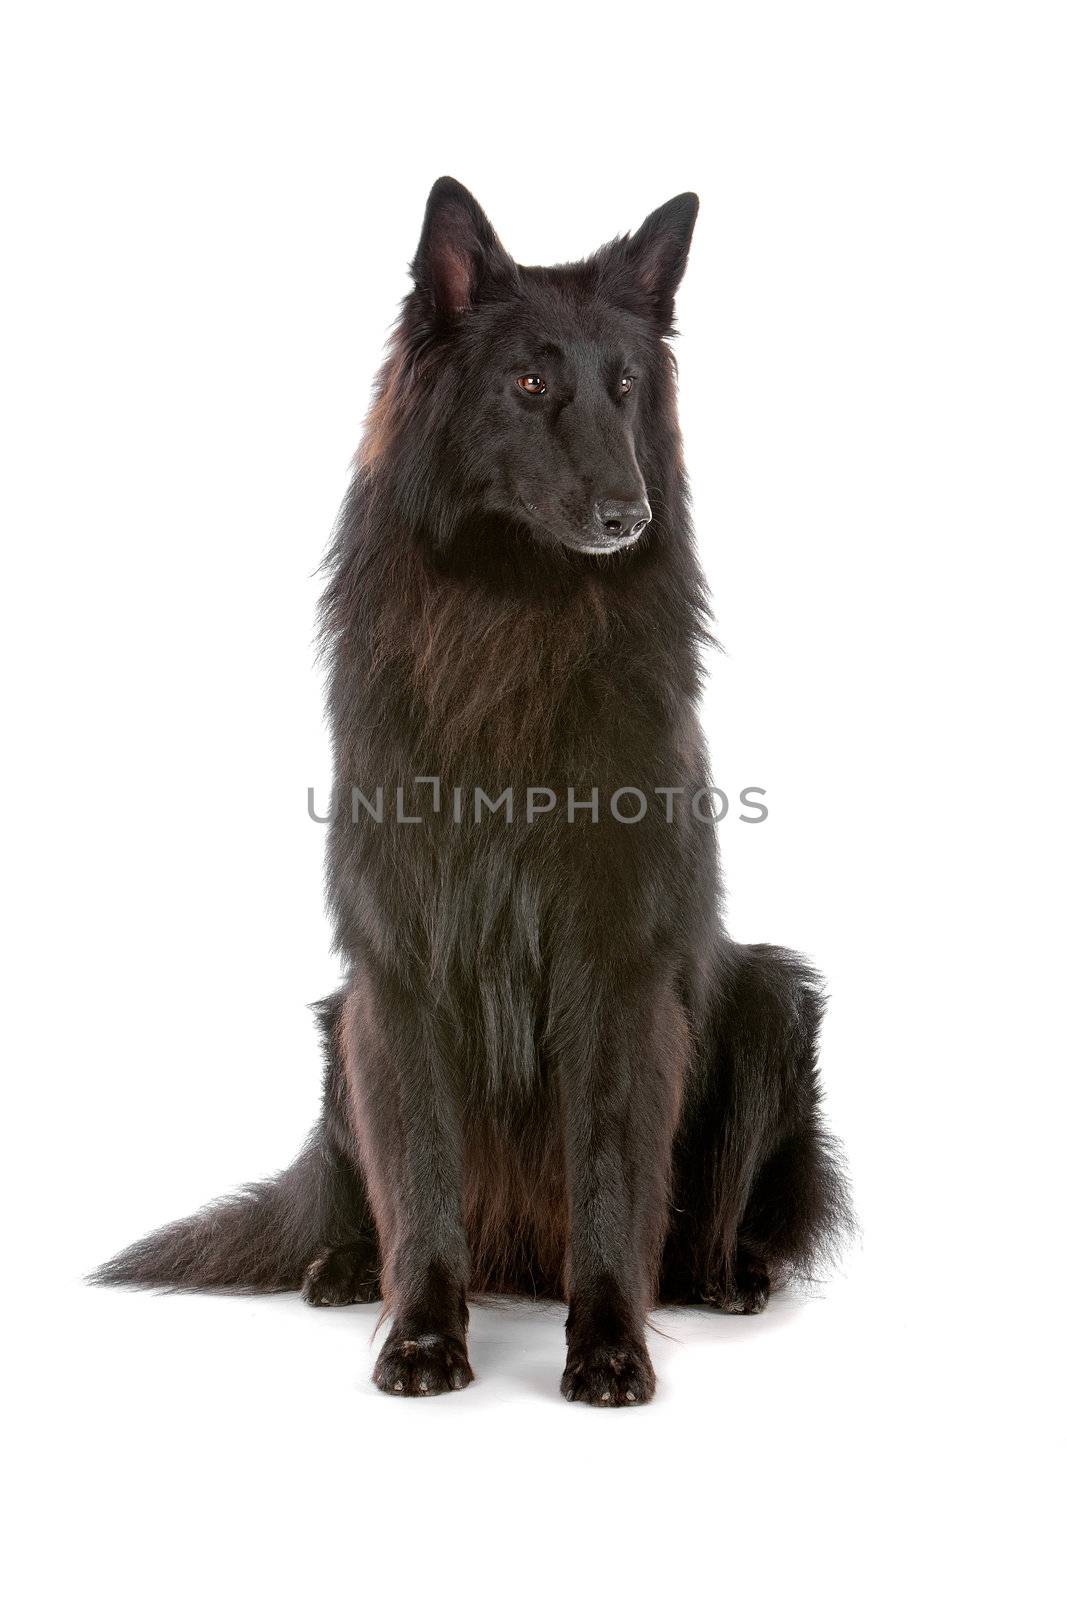 Groenendaeler or black long haired Belgium shepherd by eriklam